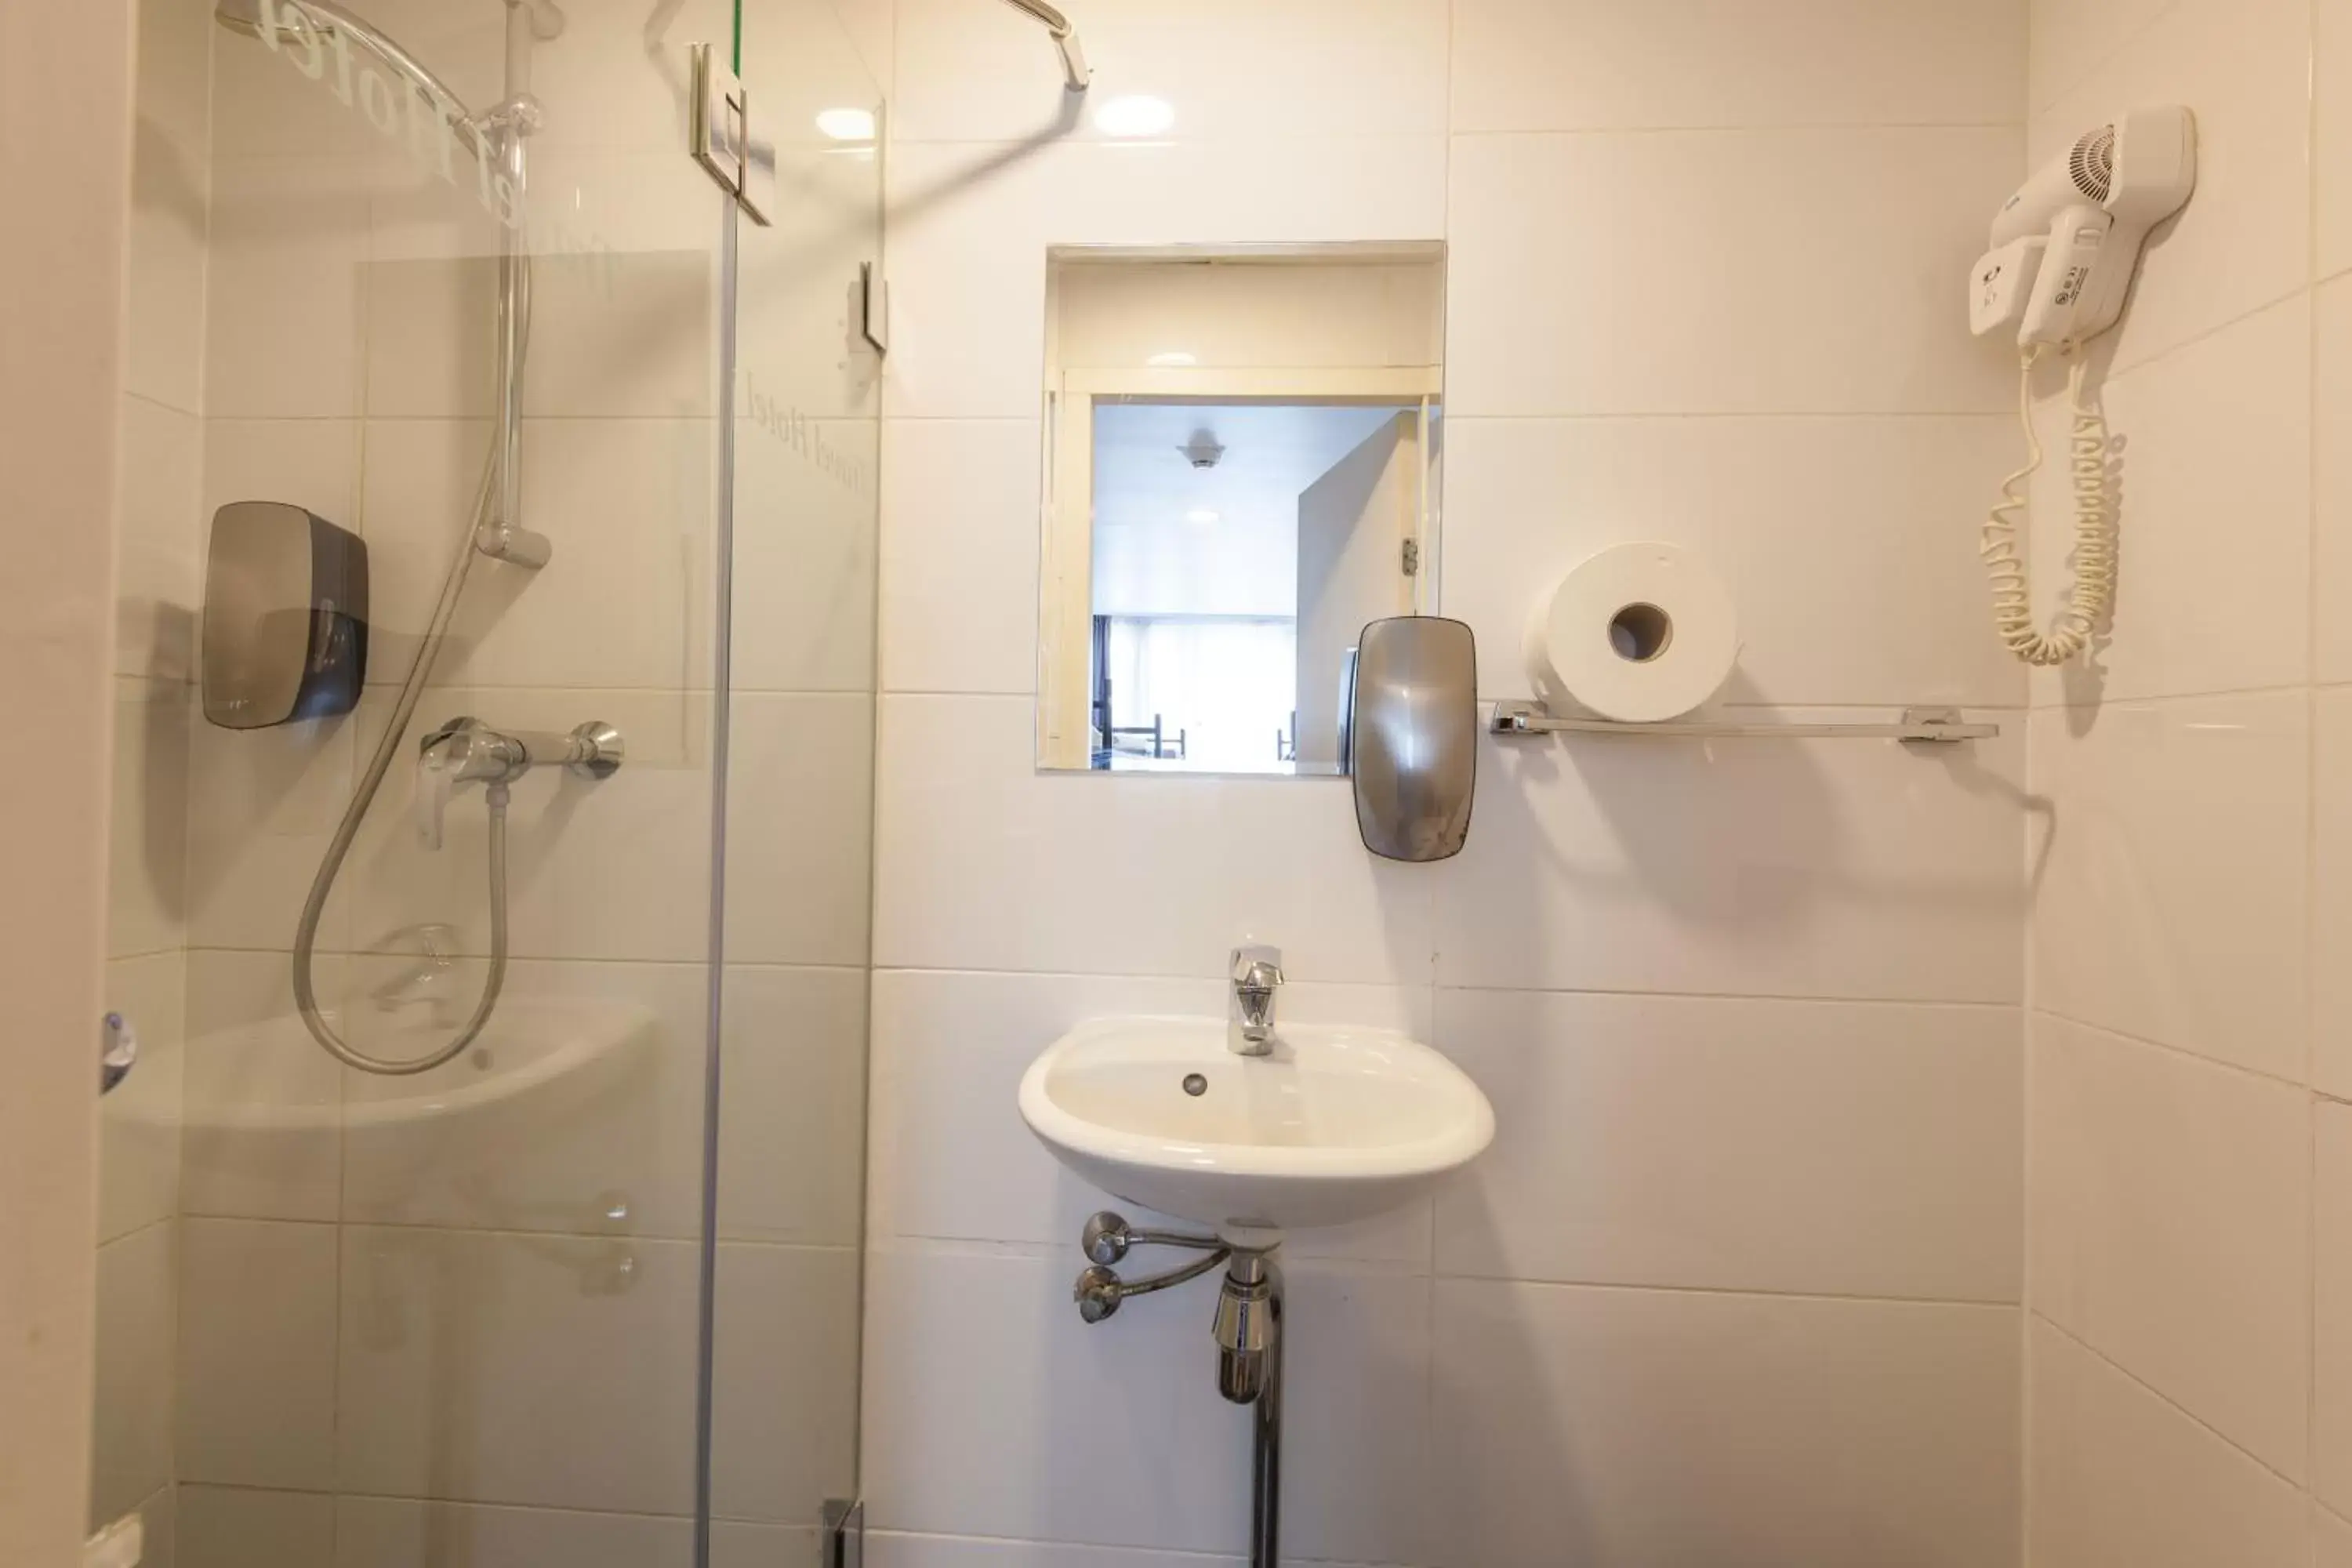 Bathroom in Travel Hotel Amsterdam